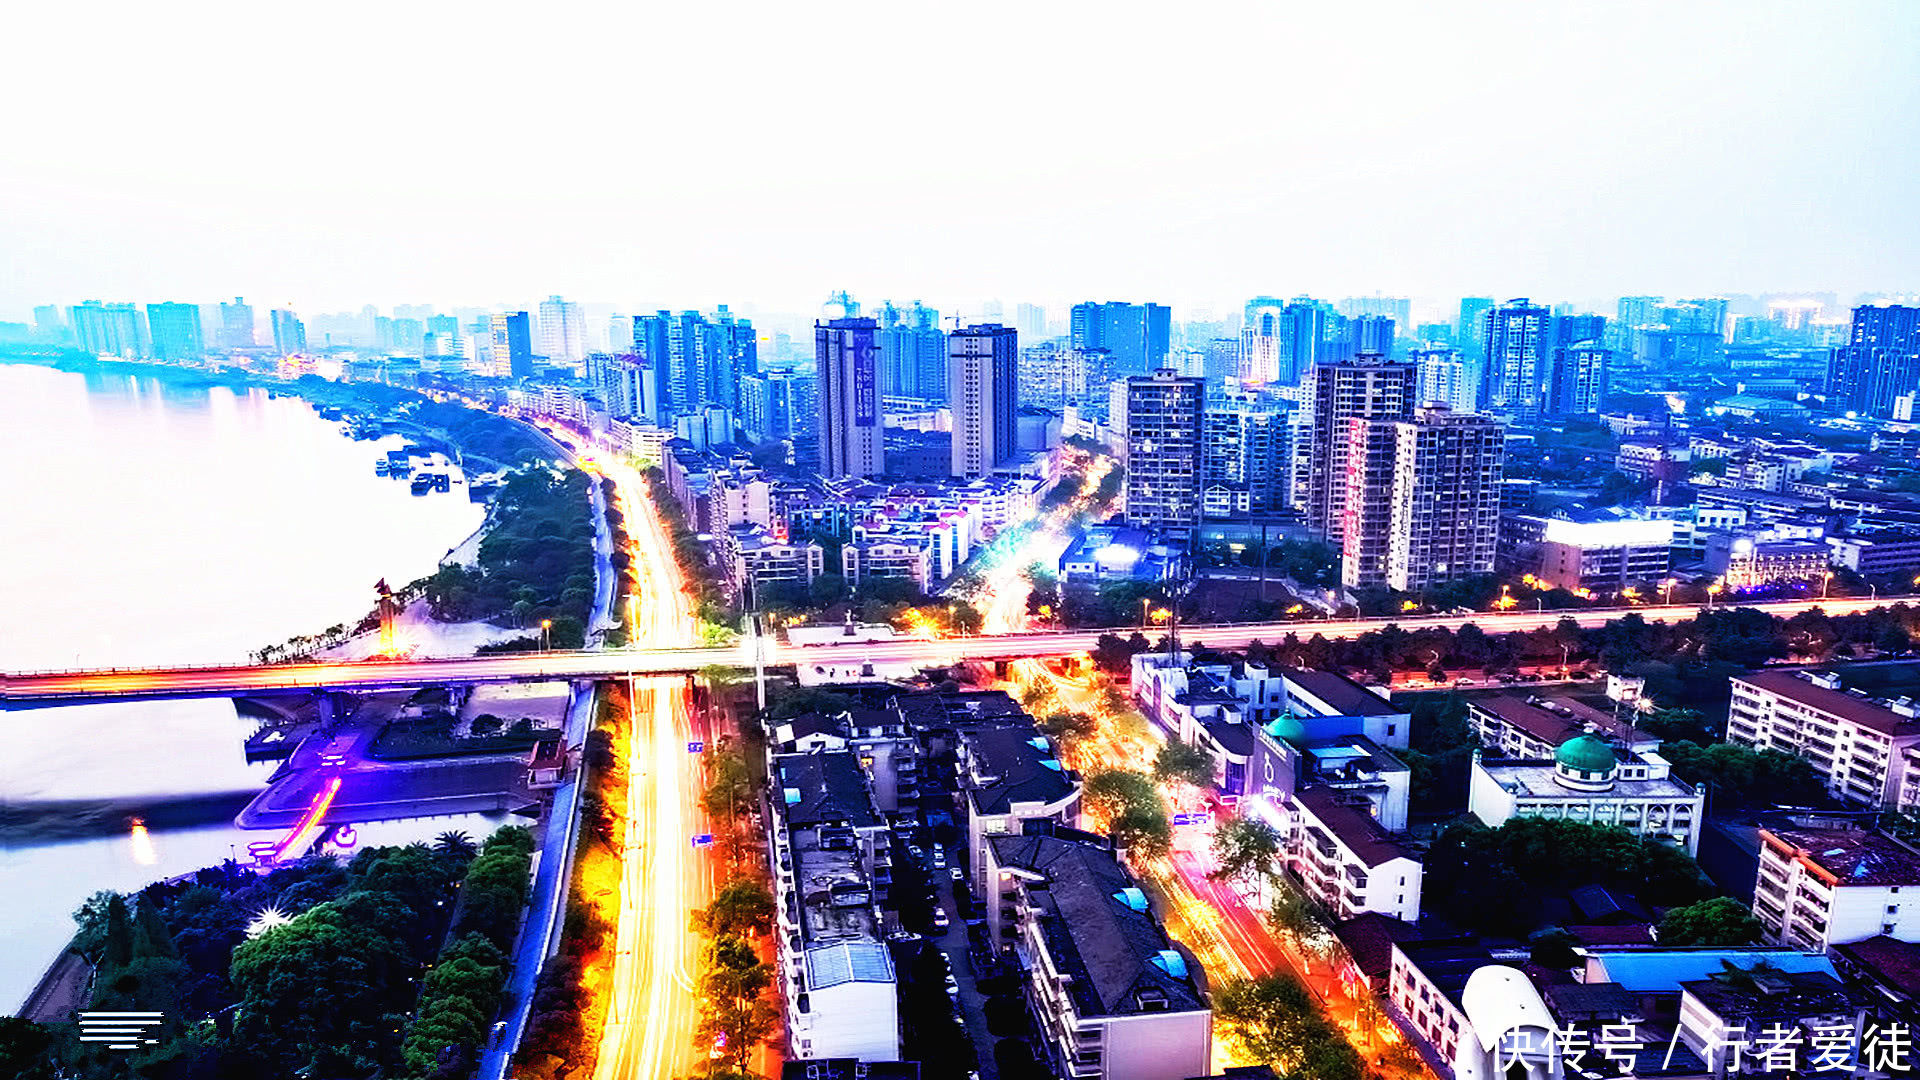 湖南最挤的城市,比衡阳 邵阳还挤,经济却比岳阳